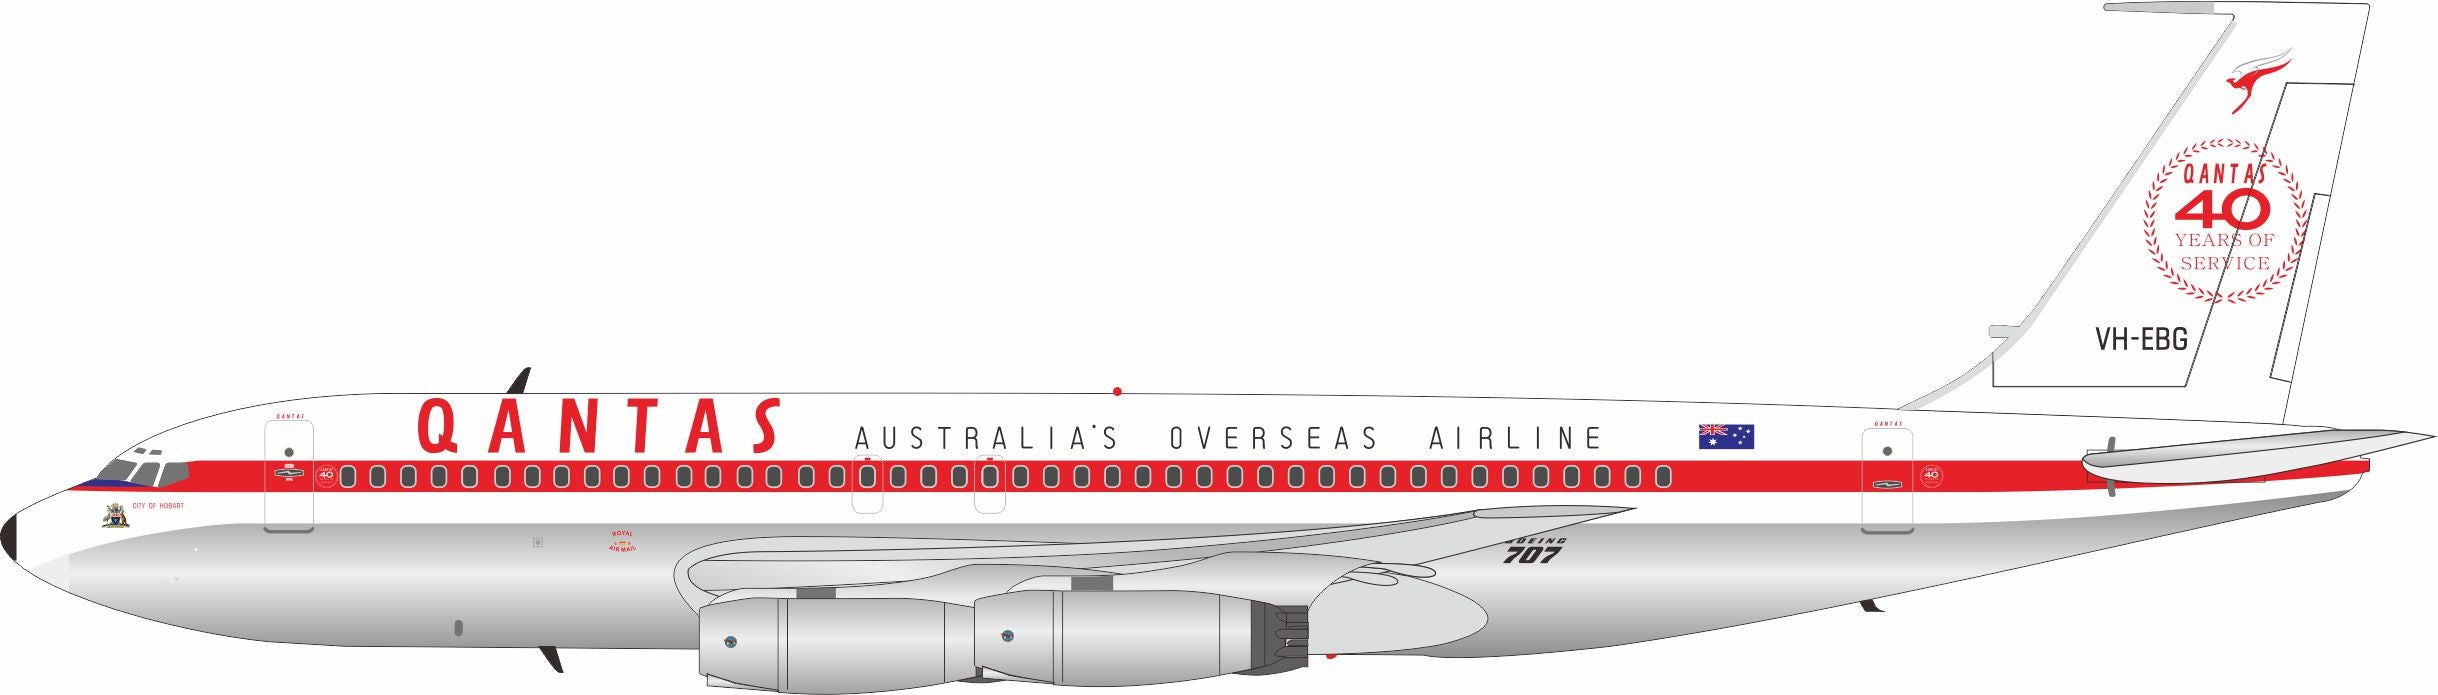 Qantas / Boeing B707-100 / VH-EBG / IF701QF0221P / 1:200